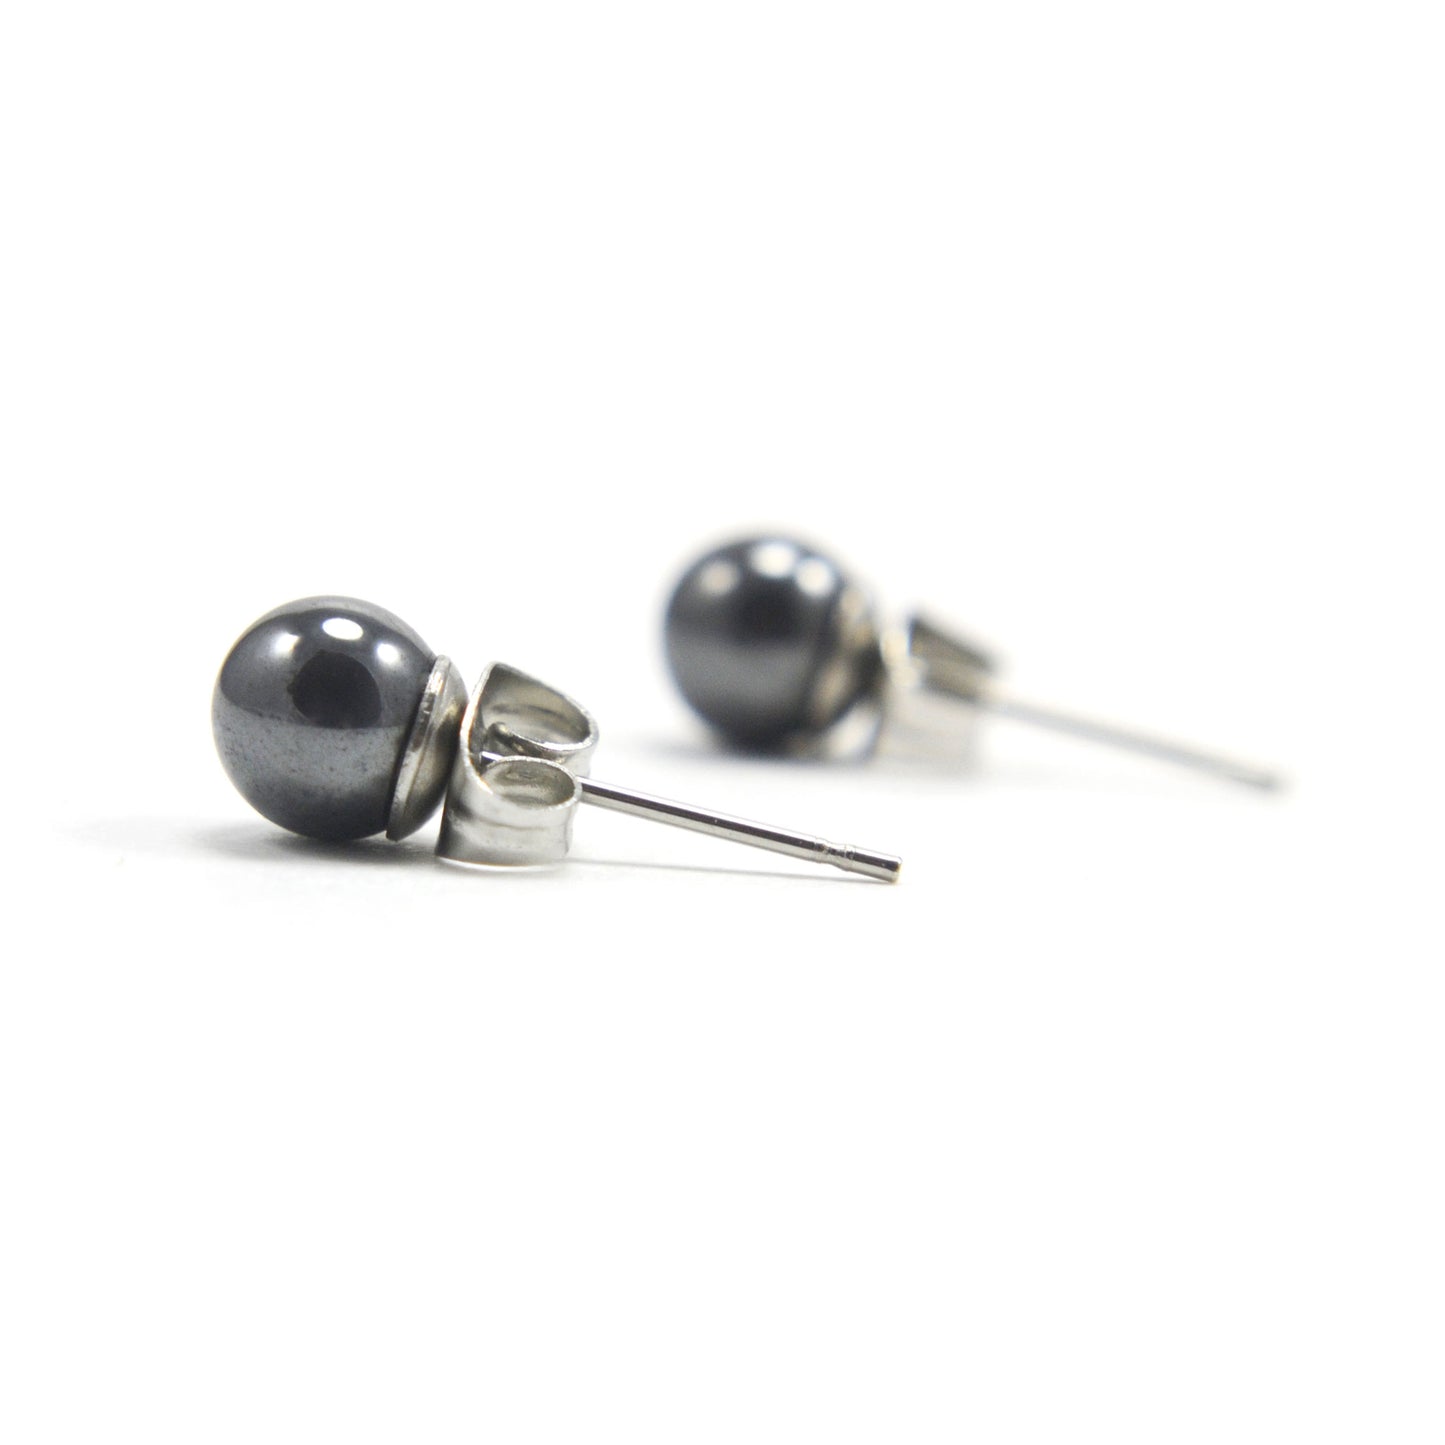 6mm Hematite ball earrings on white background